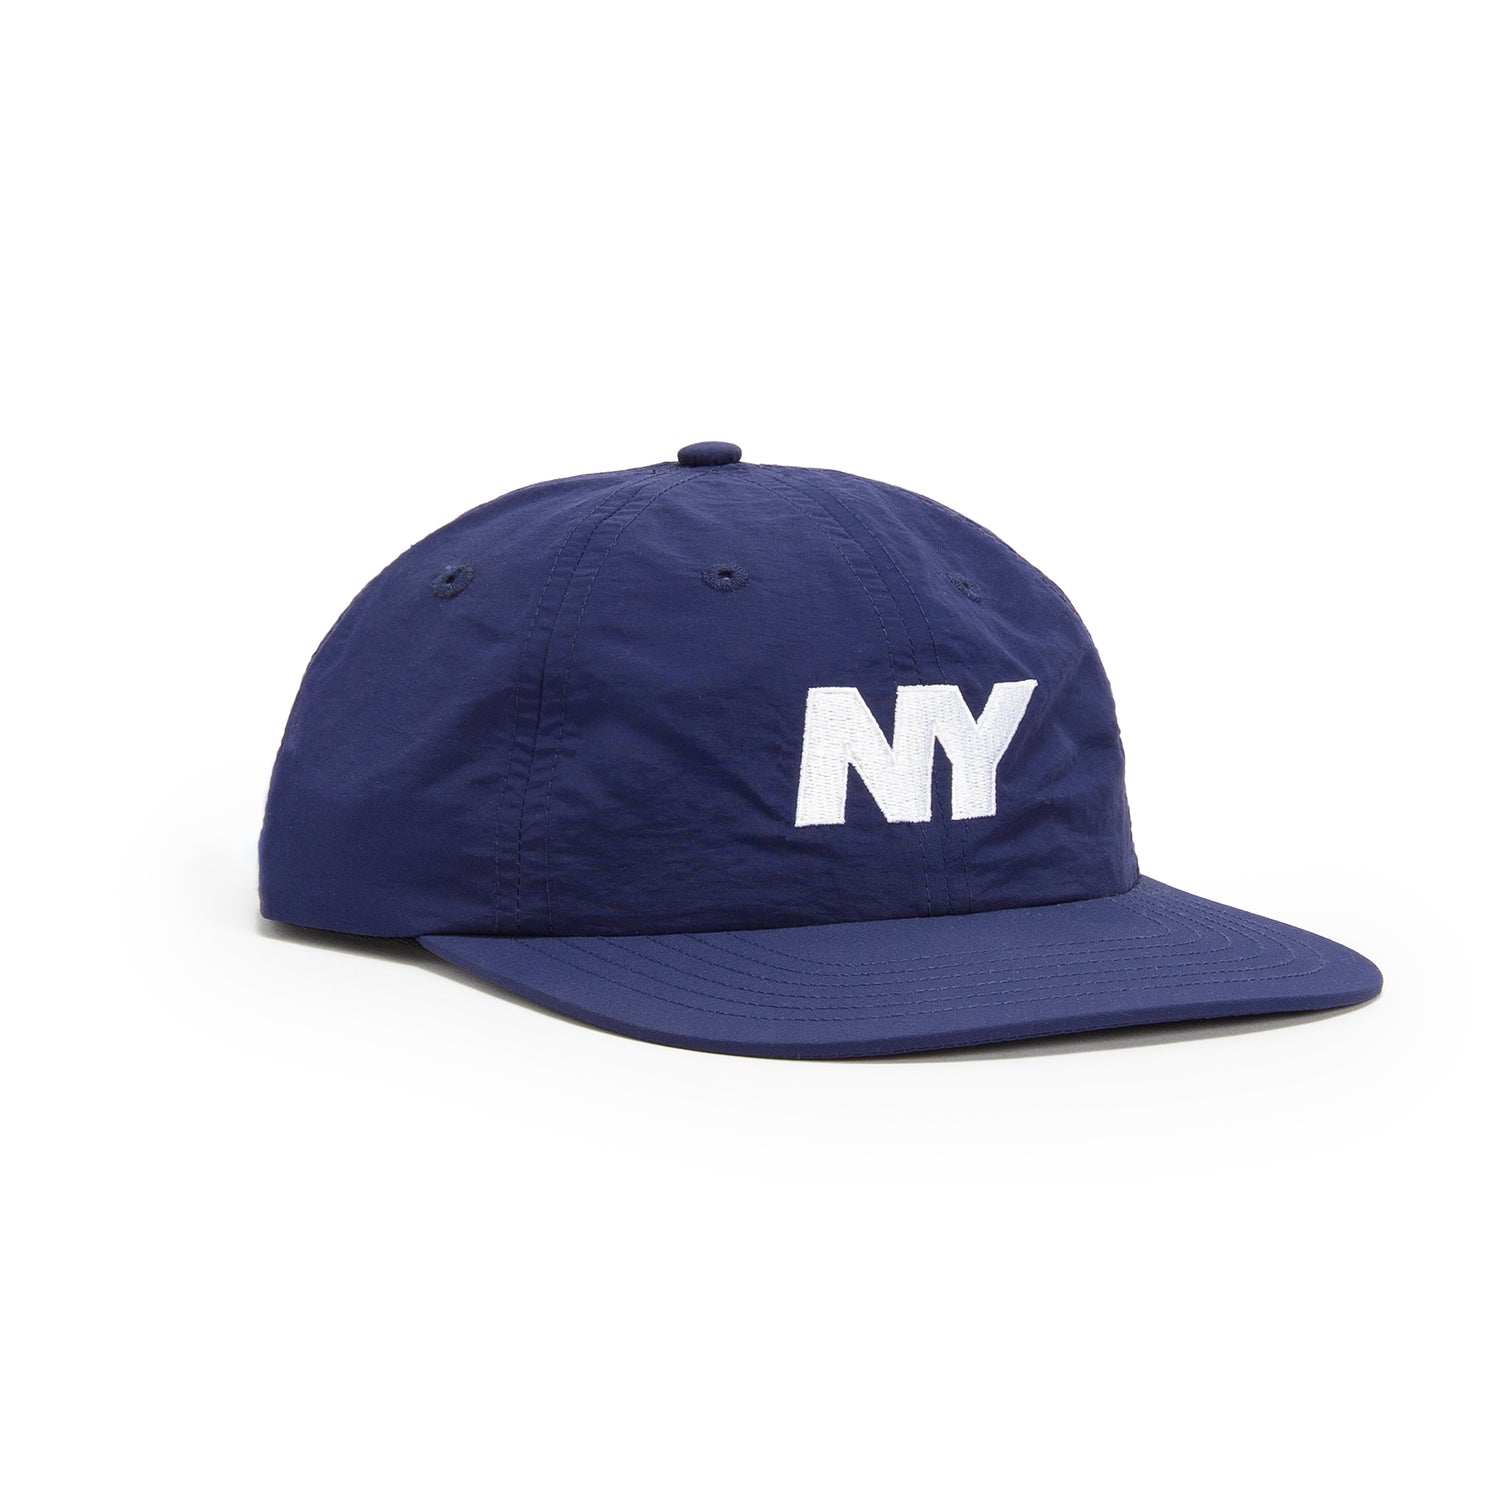 Only NY NY Speed Logo Hat - Navy